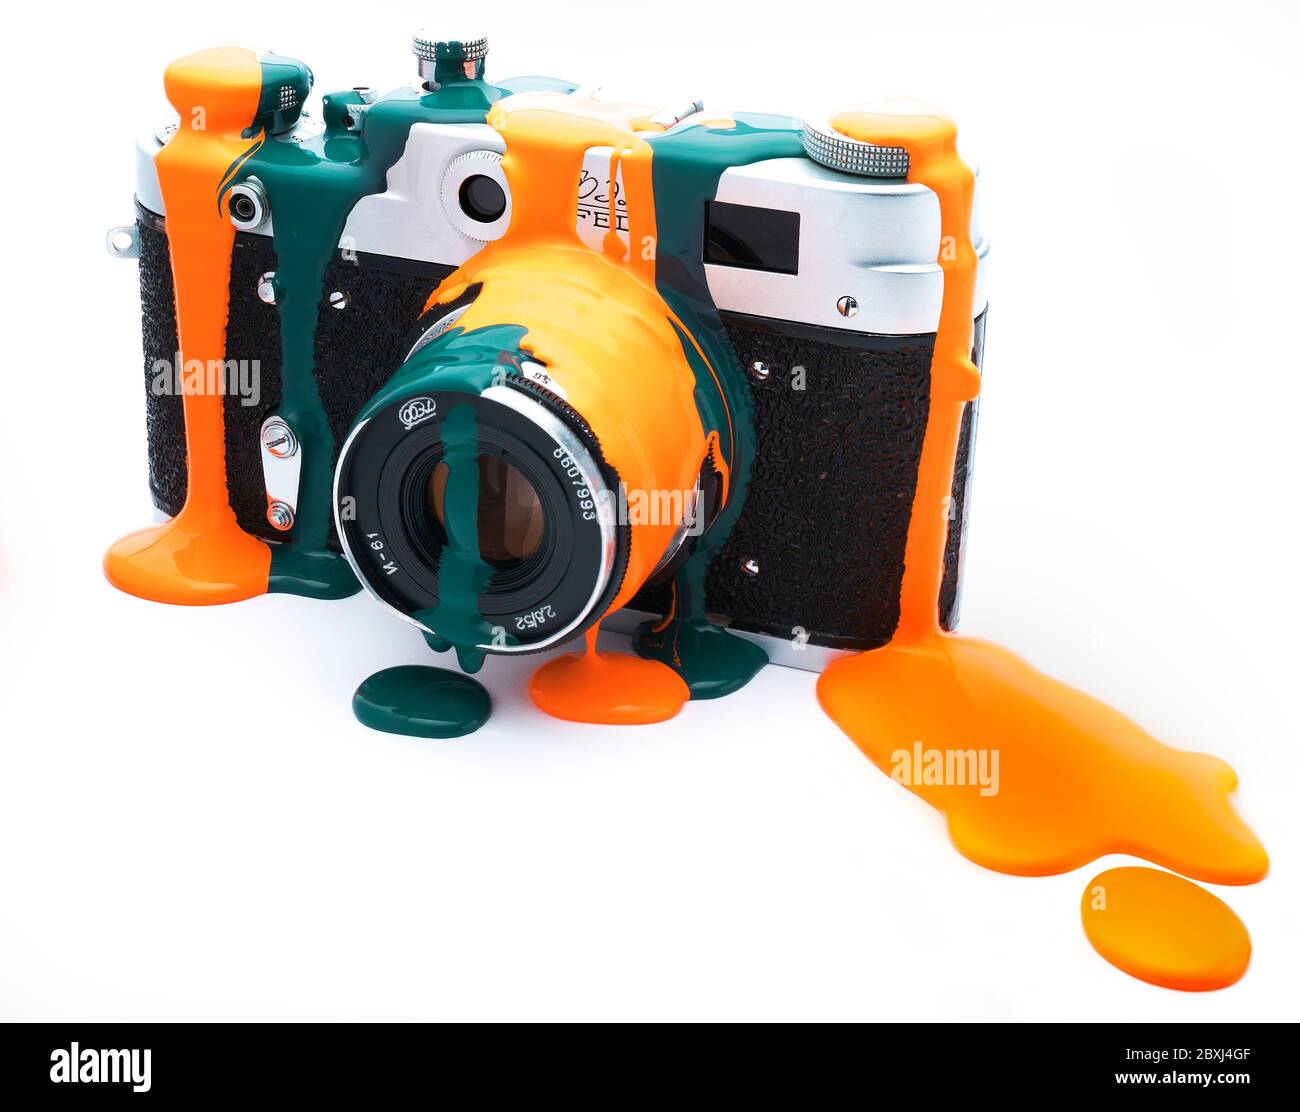 Vintage russische Entfernungsmesser Kamera tropft in Farbe, Orange und blaugrün. Stockfoto